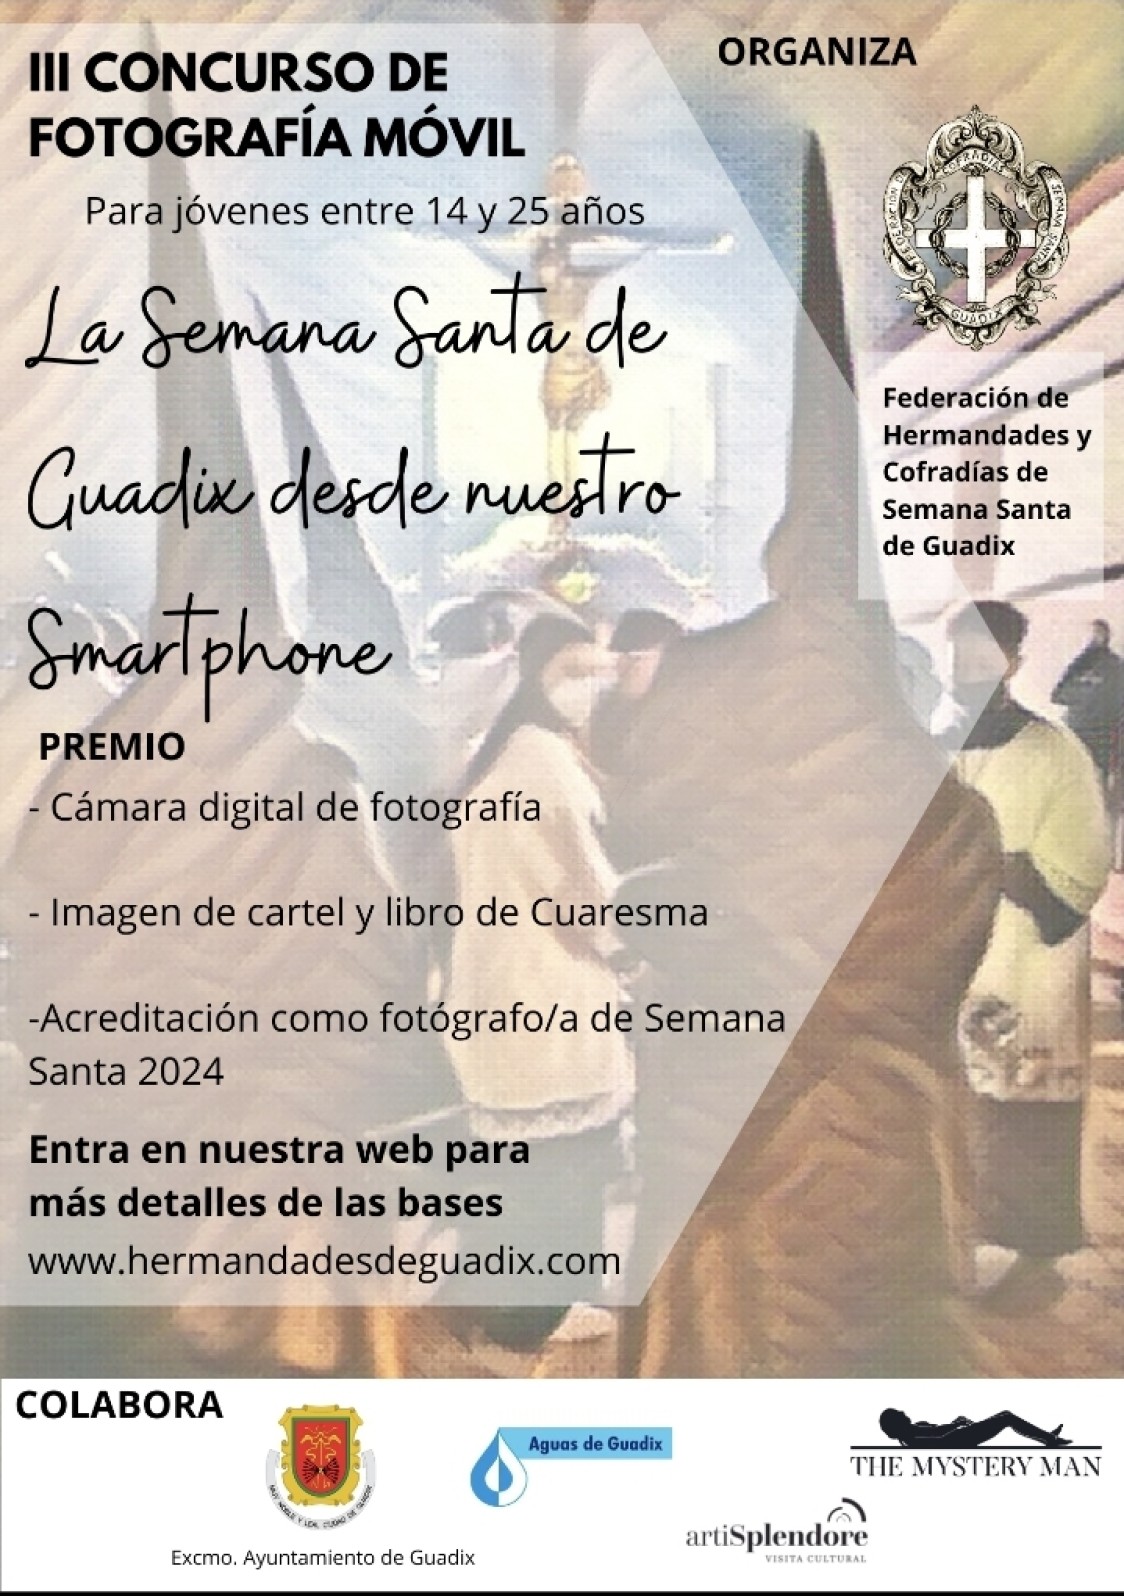 III CONCURSO DE FOTOGRAFÍA MÓVIL	 “La Semana Santa de Guadix 2023 desde nuestro Smartphone”.